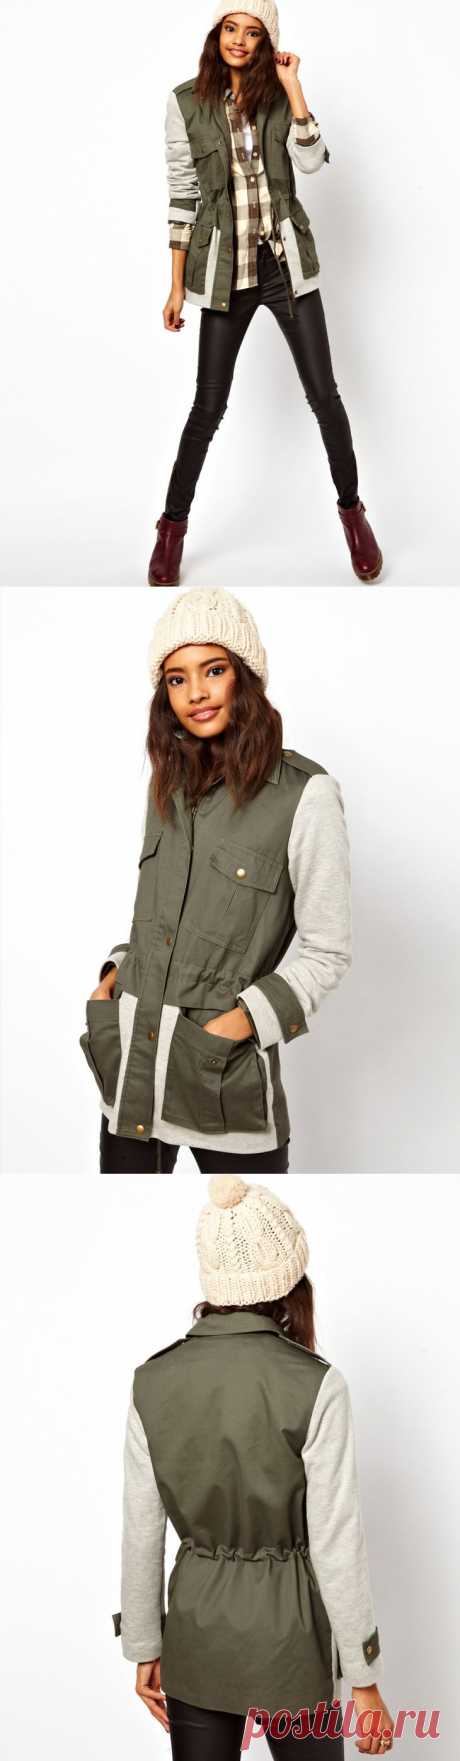 Куртка ASOS / Курточные переделки / Модный сайт о стильной переделке одежды и интерьера